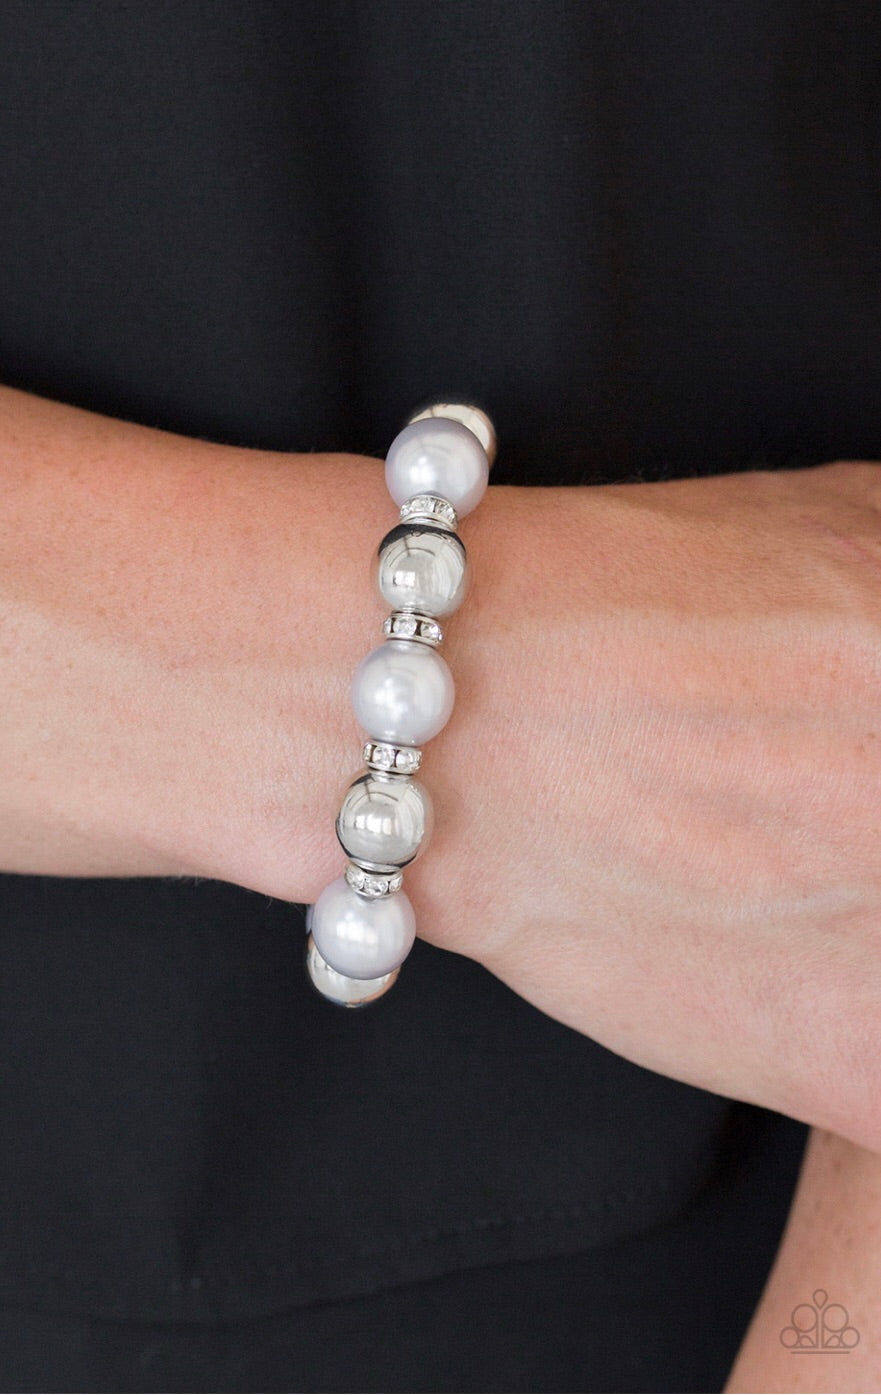 So Not Sorry - Silver Pearl and Rhinestone Paparazzi Jewelry Bracelet paparazzi accessories jewelry Bracelet